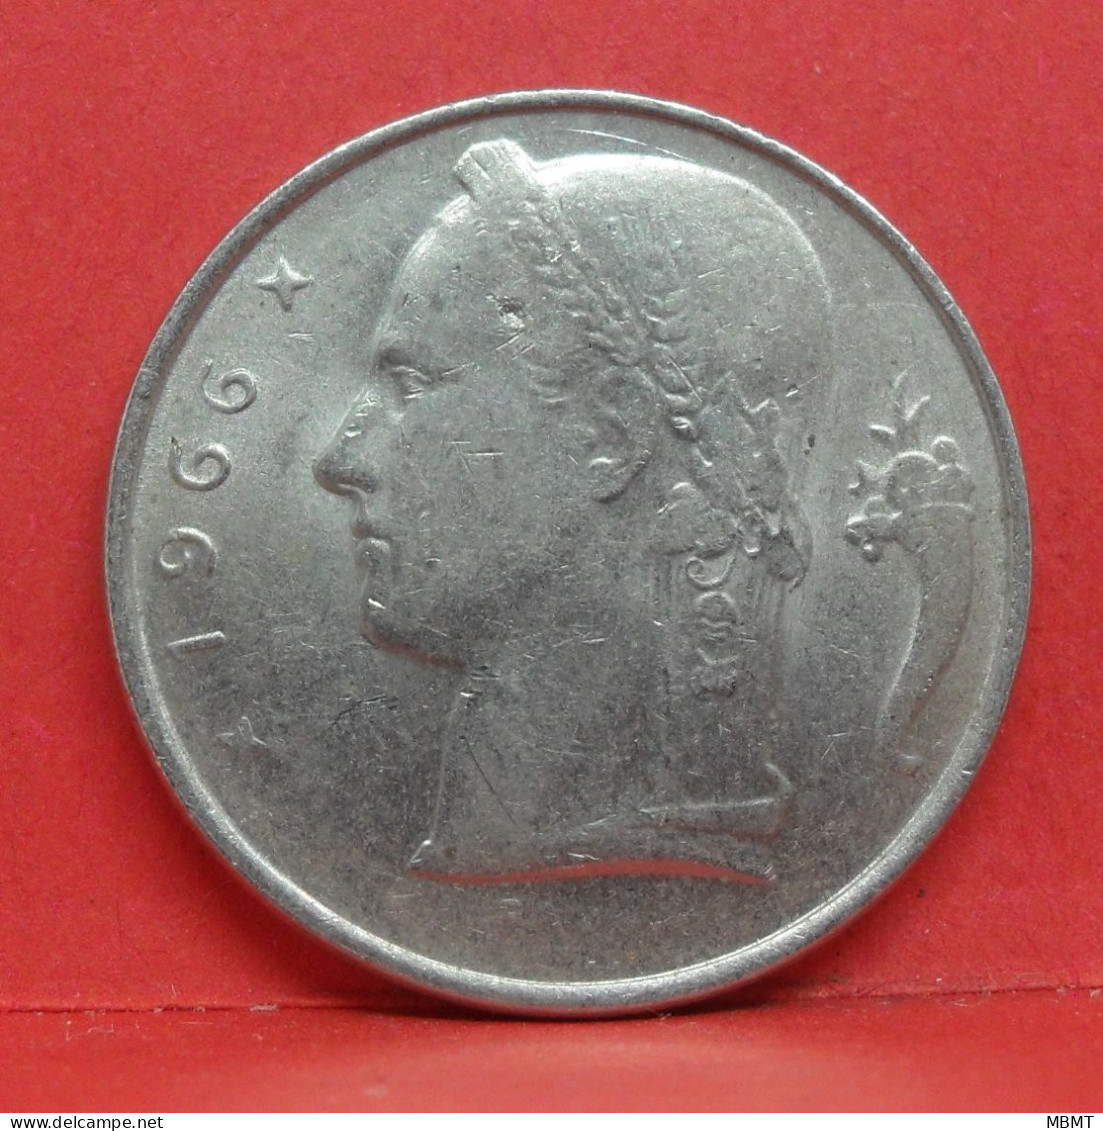 5 Frank 1966 - TTB - Pièce Monnaie Belgie - Article N°1988 - 5 Francs